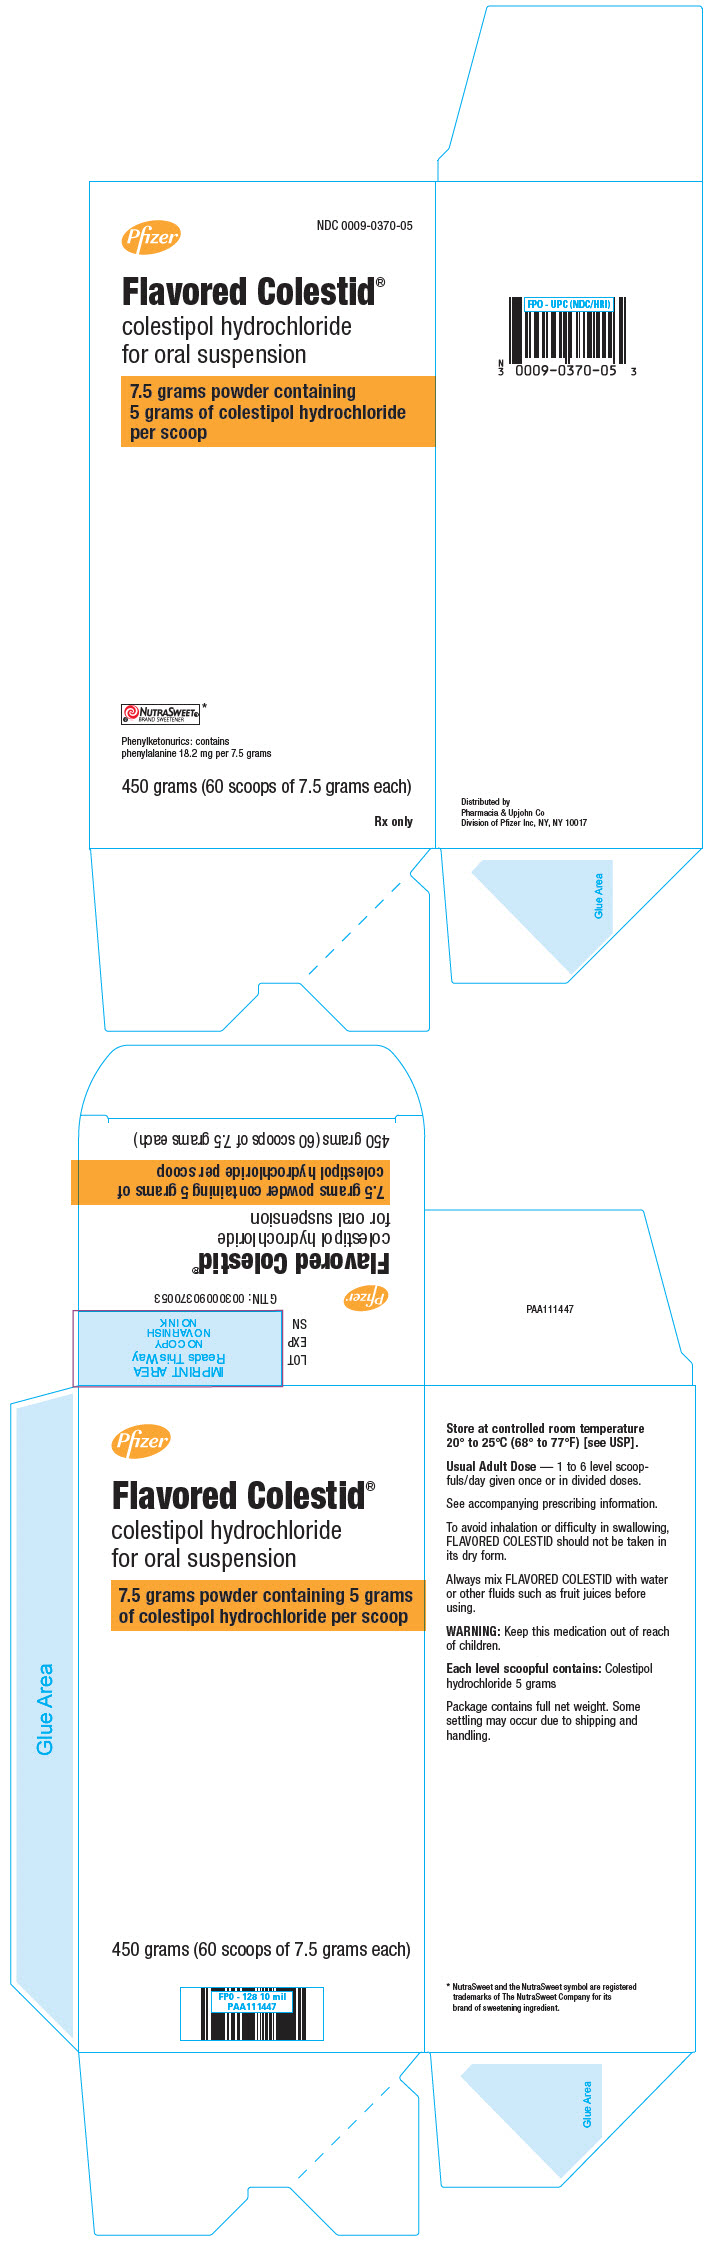 PRINCIPAL DISPLAY PANEL - 450 gram Bottle Carton